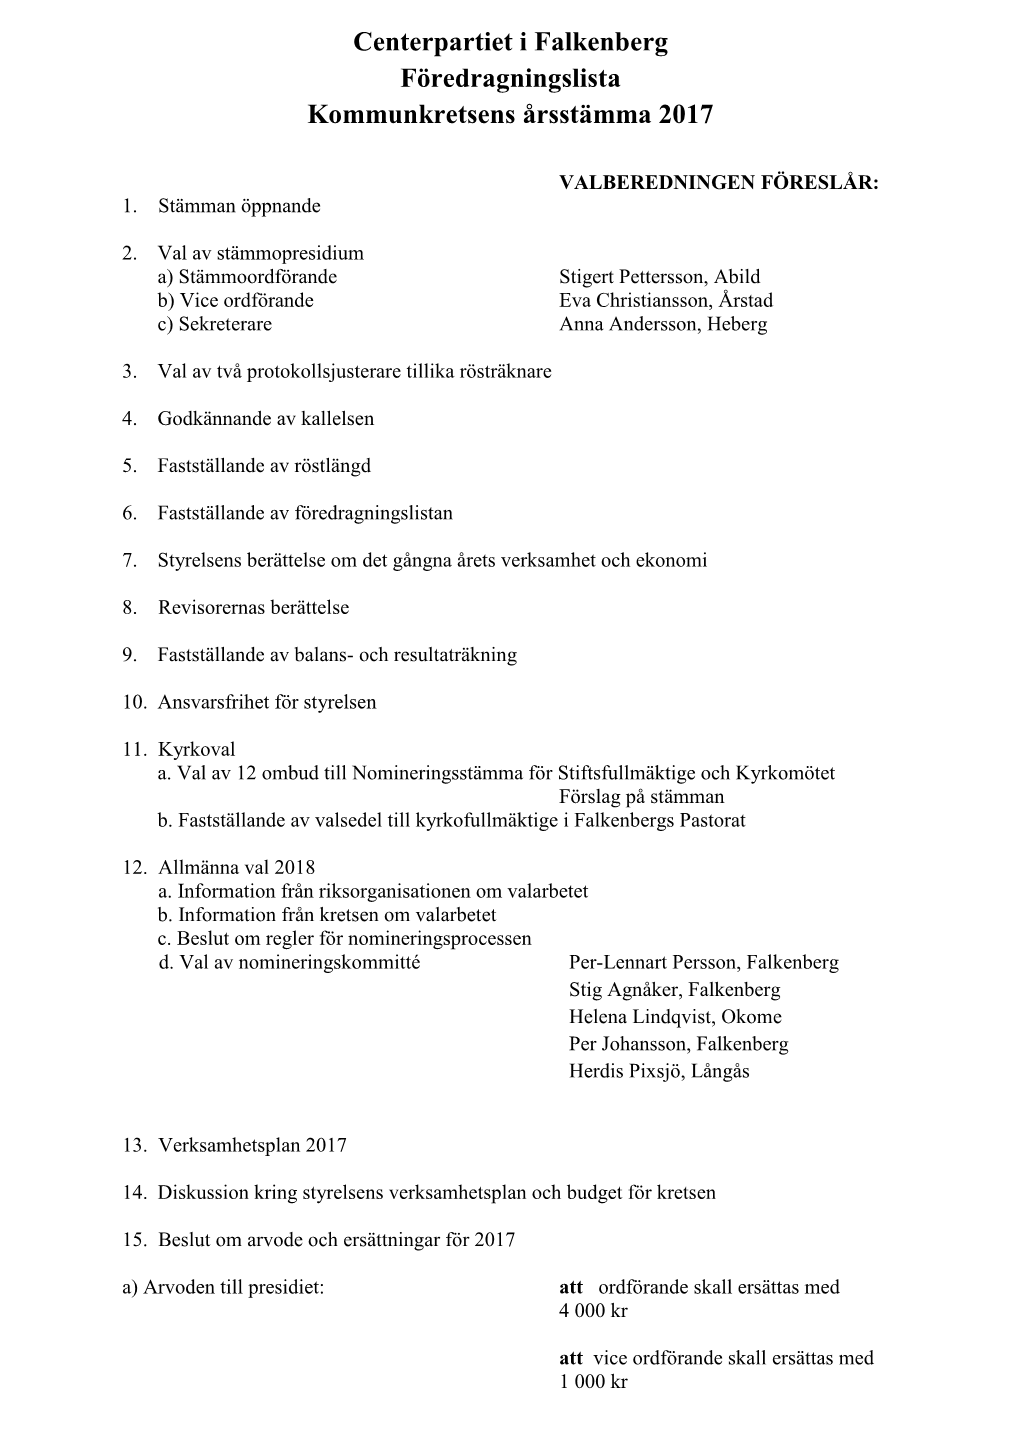 Centerpartiet I Falkenberg Föredragningslista Kommunkretsens Årsstämma 2017